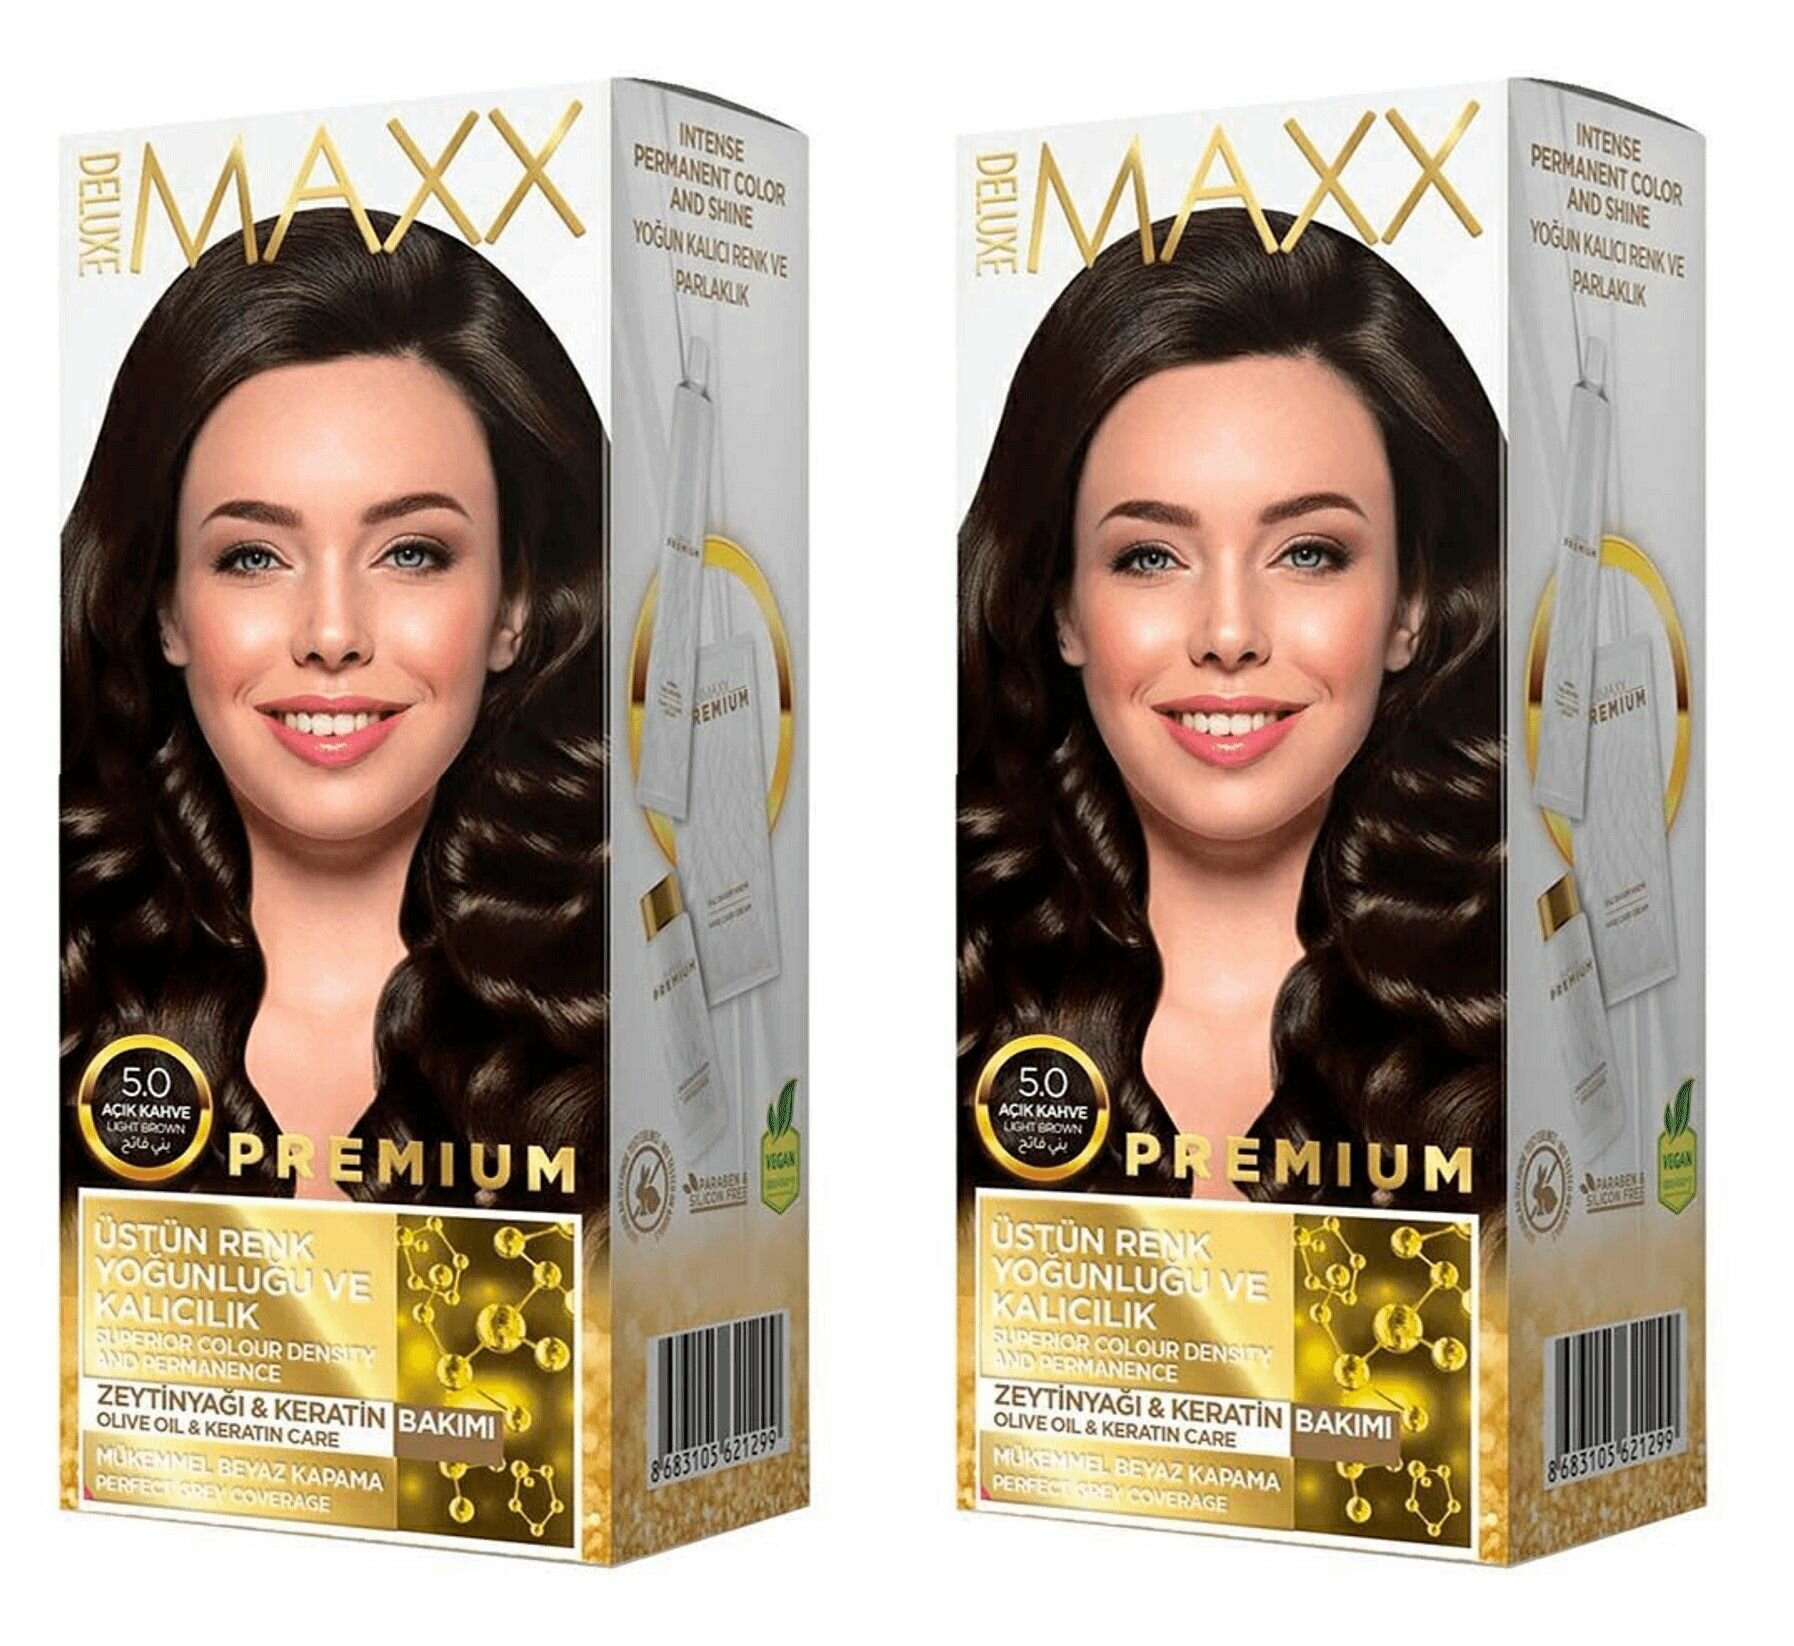 MAXX DELUXE Краска для волос Premium, тон 5.0 Светлый каштан, 110 г, 2 шт